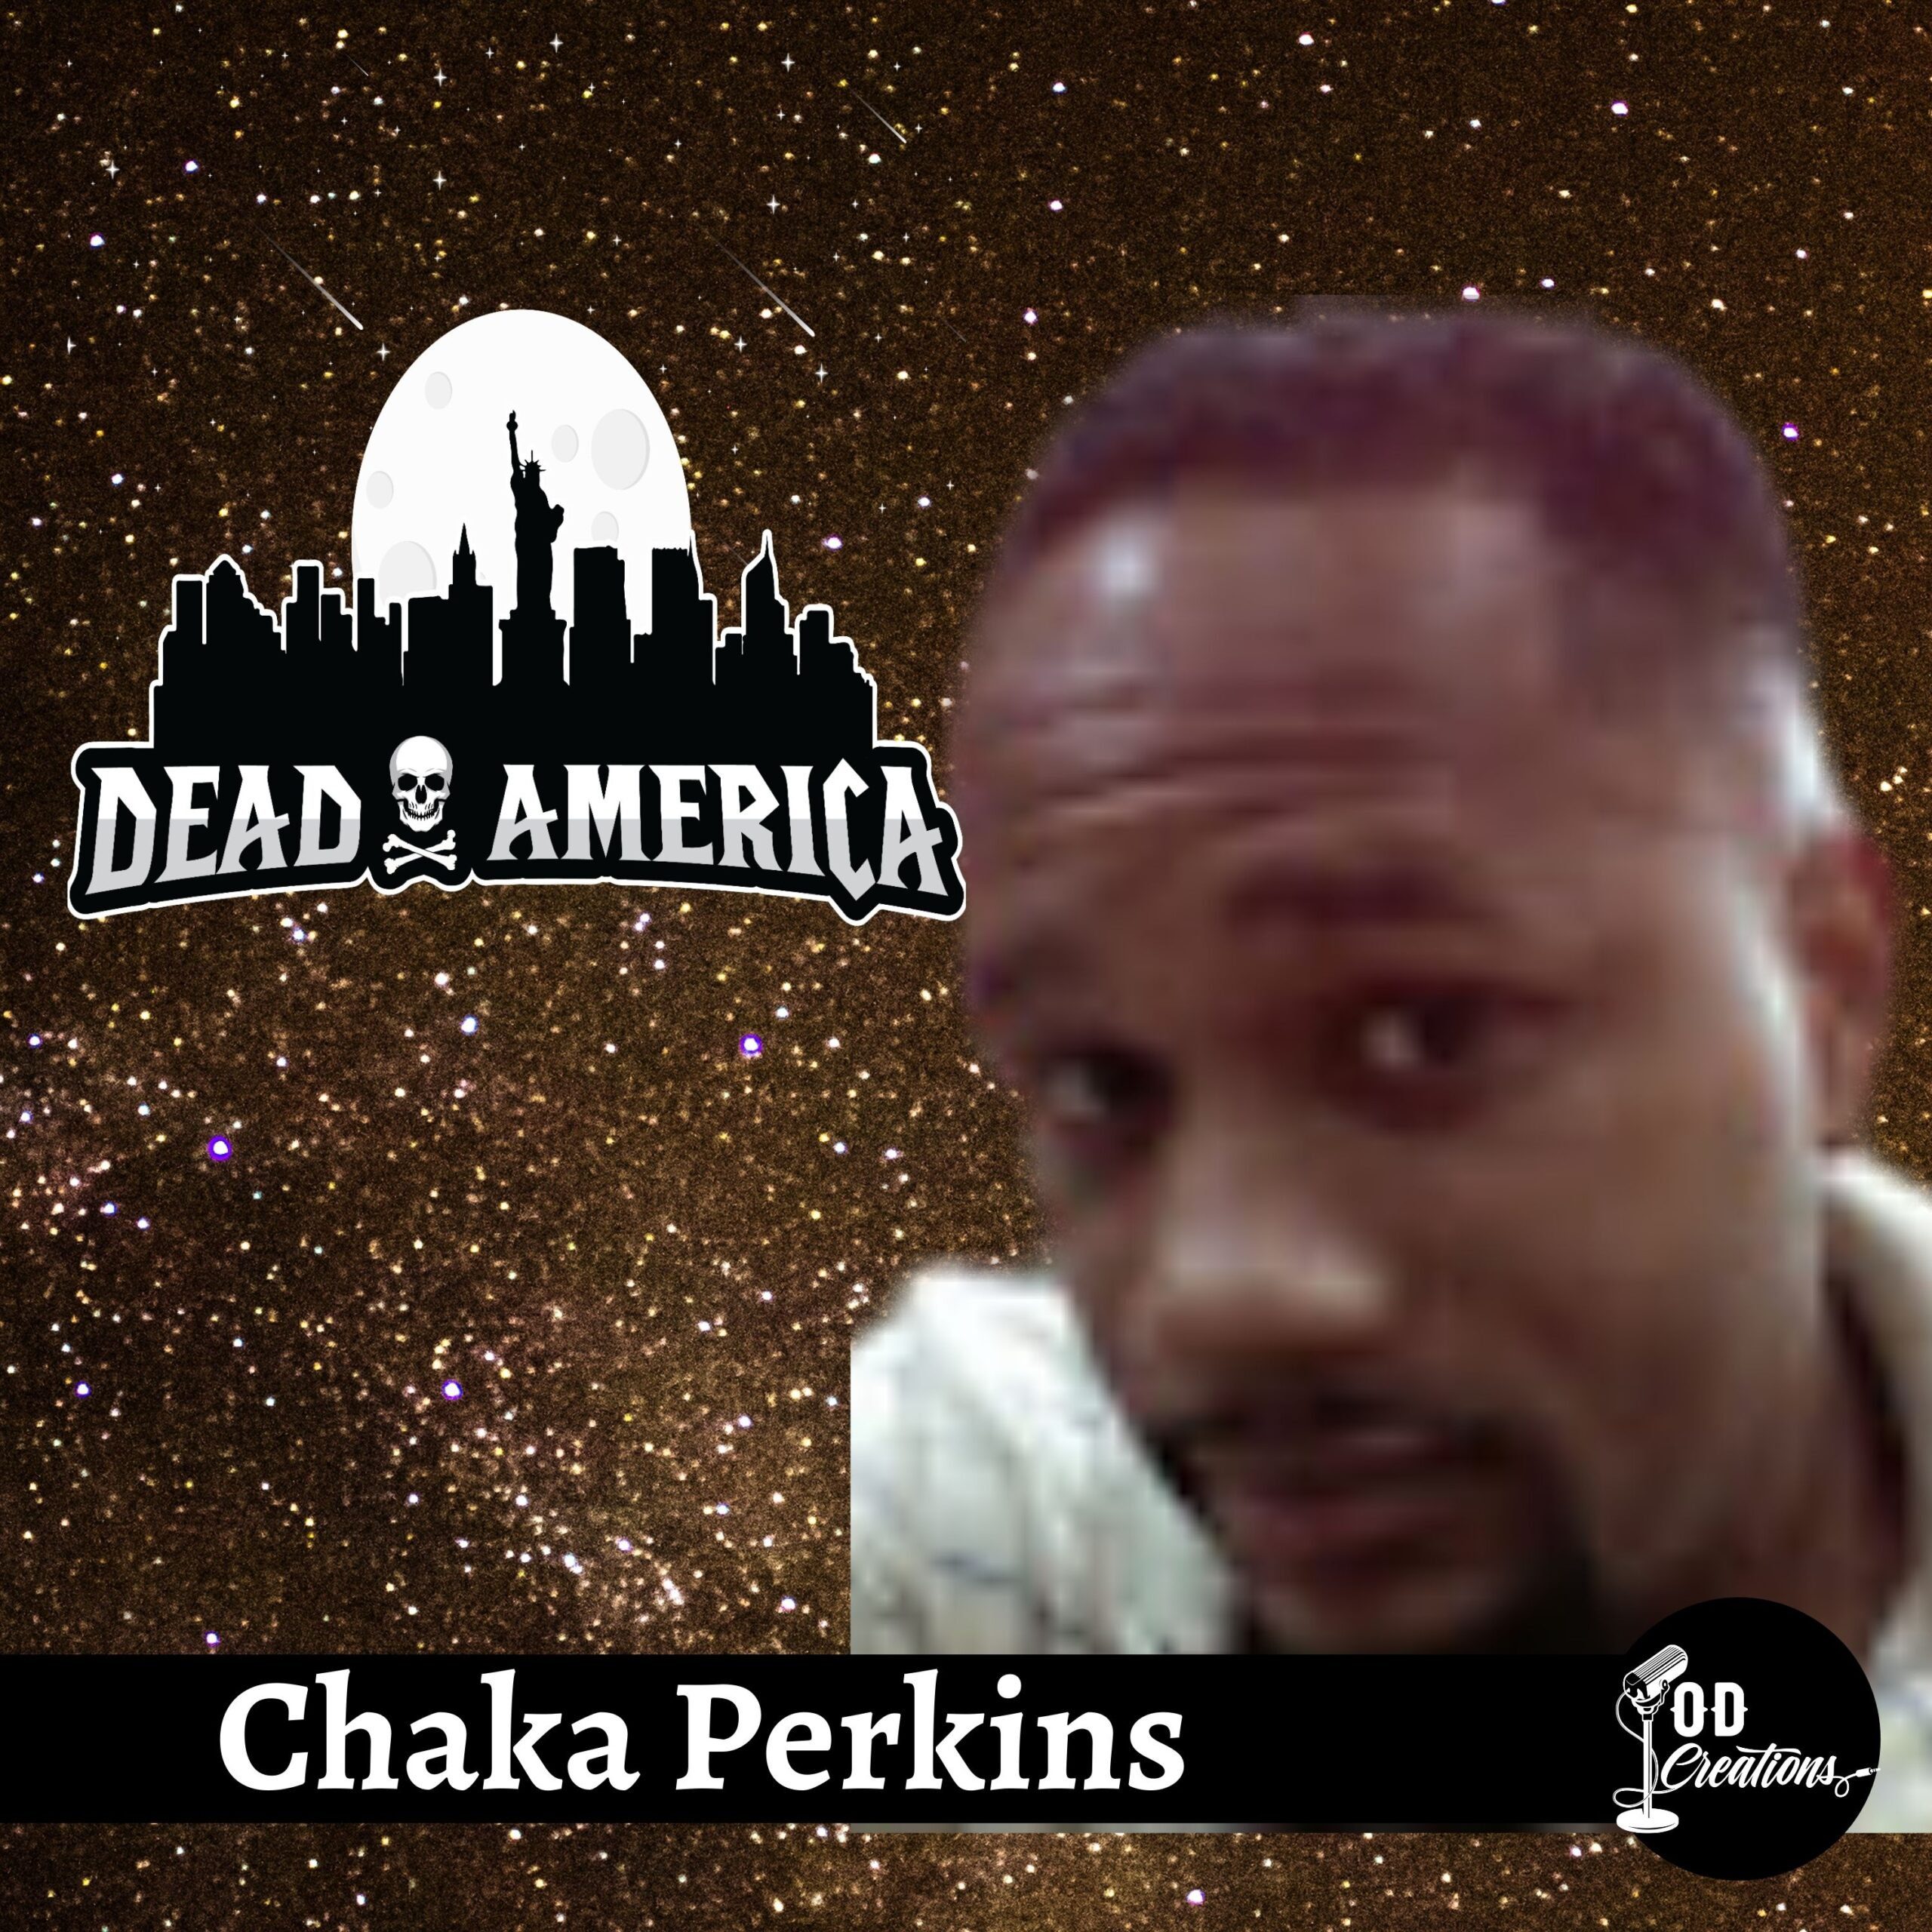 Chaka Perkins, AKA King Chaka ent